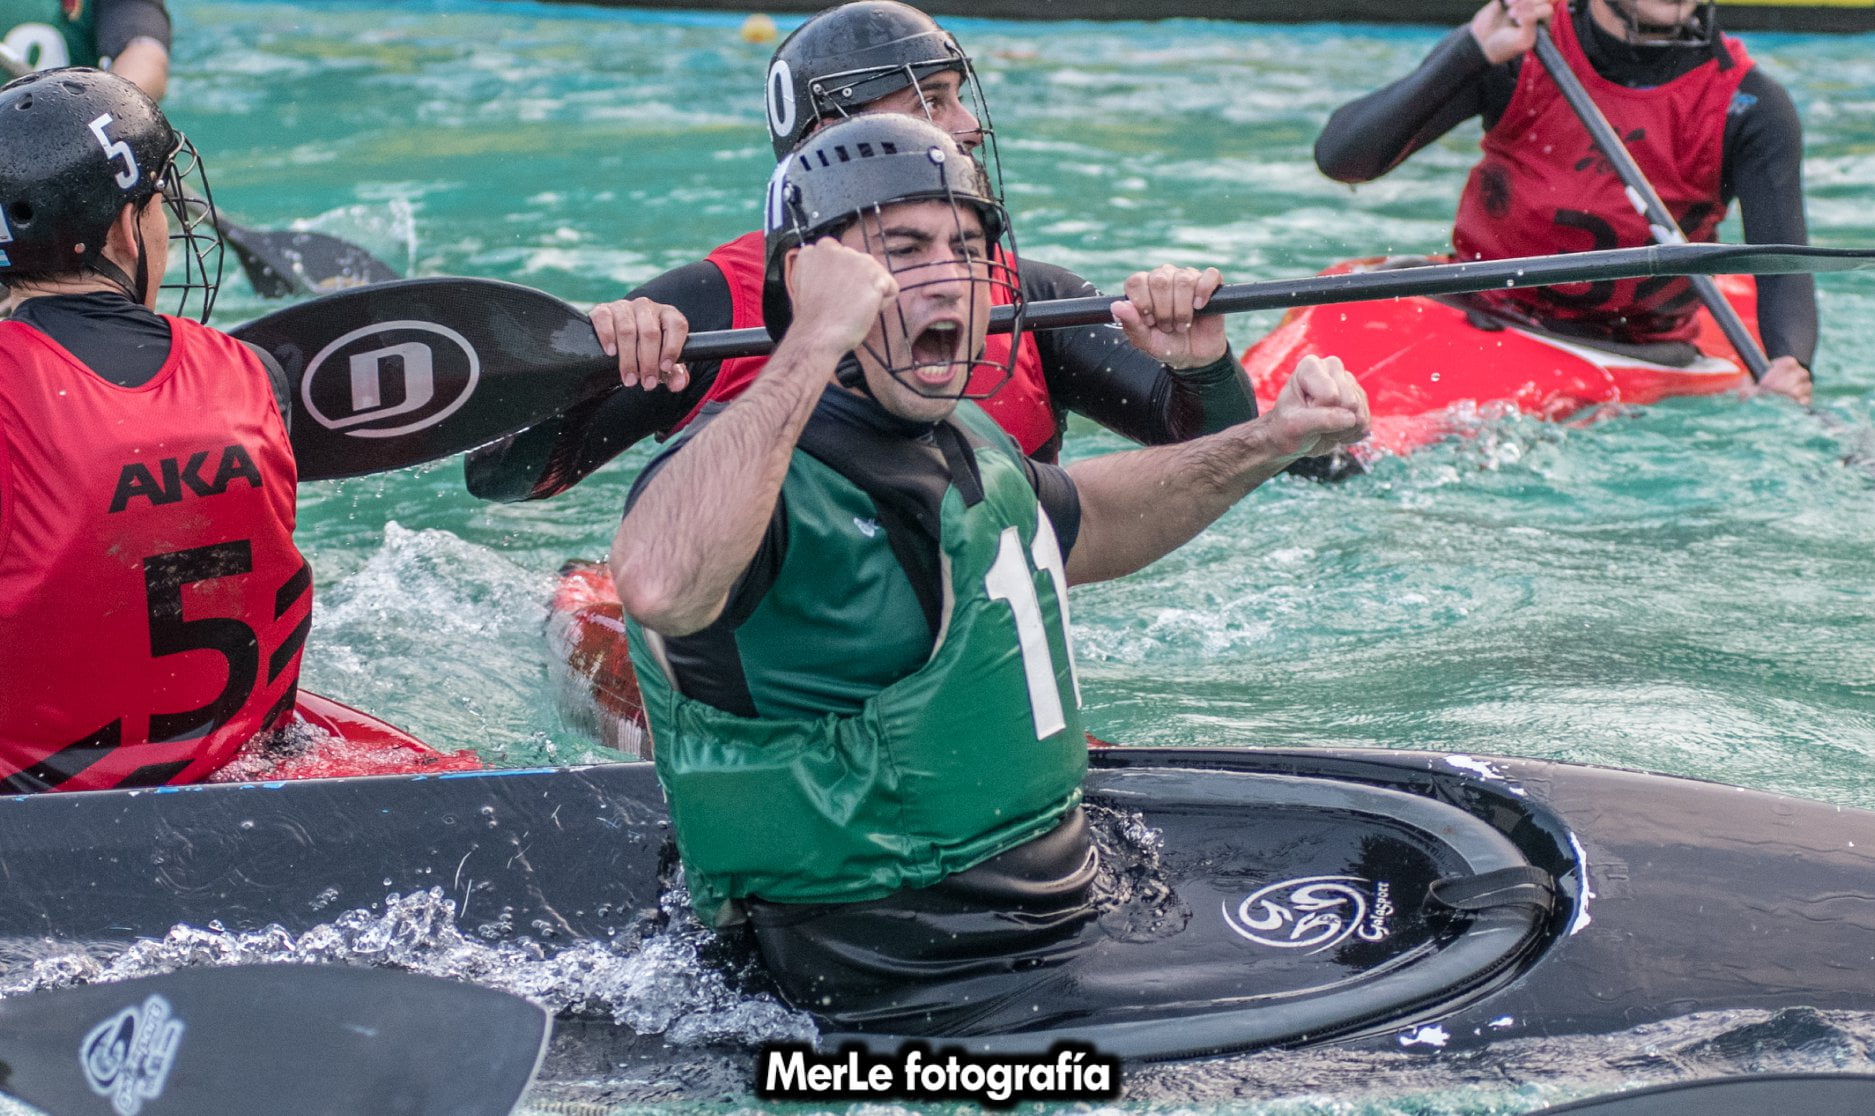 Club de Pescadores “A” ganó la tercera fecha de la Copa Argentina de Kayak Polo